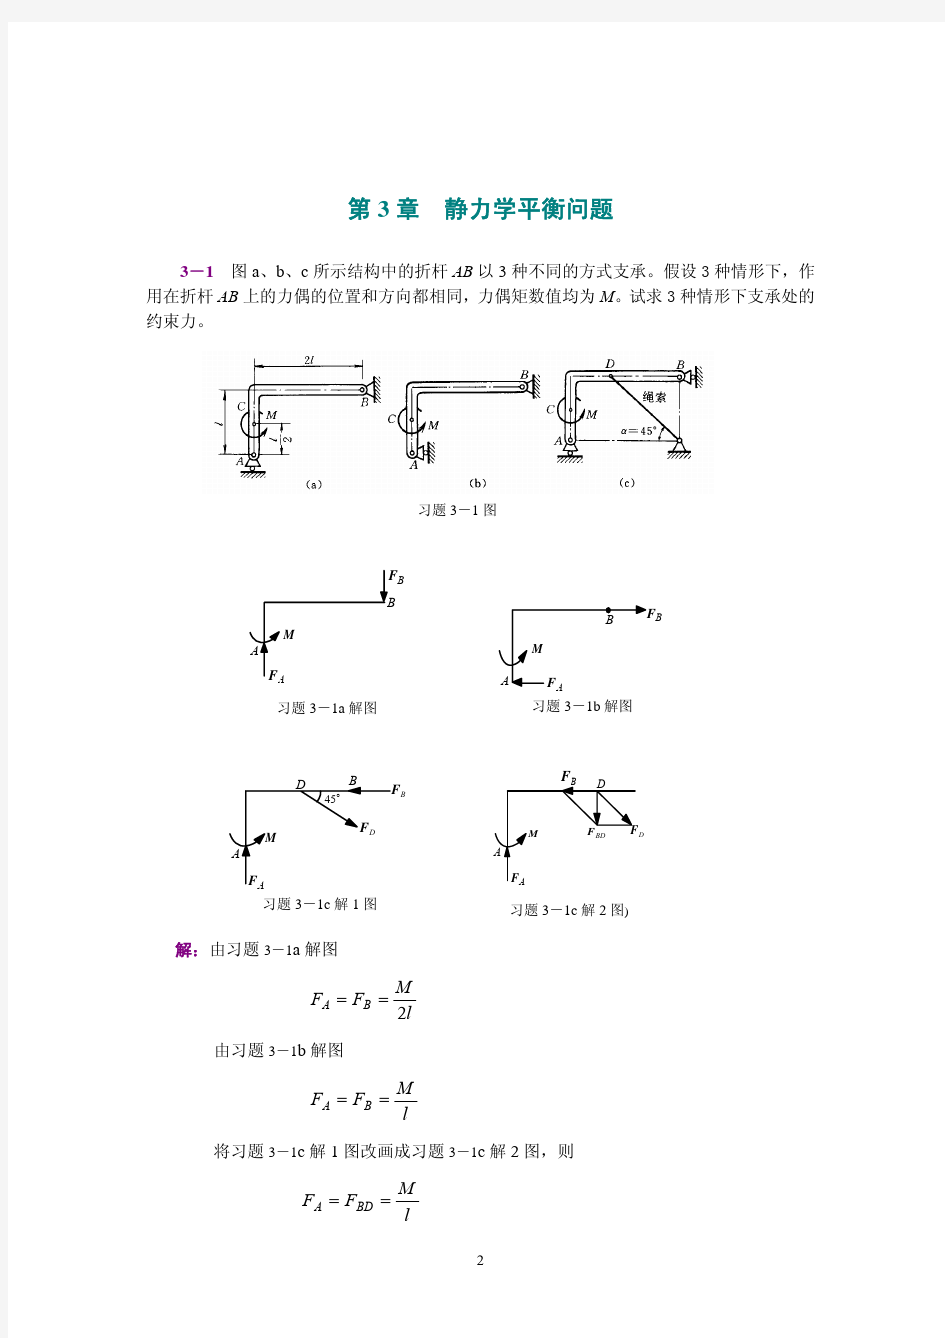 工程力学(静力学和材料力学)第2版课后习题答案 范钦珊主编 第3章 静力学平衡问题